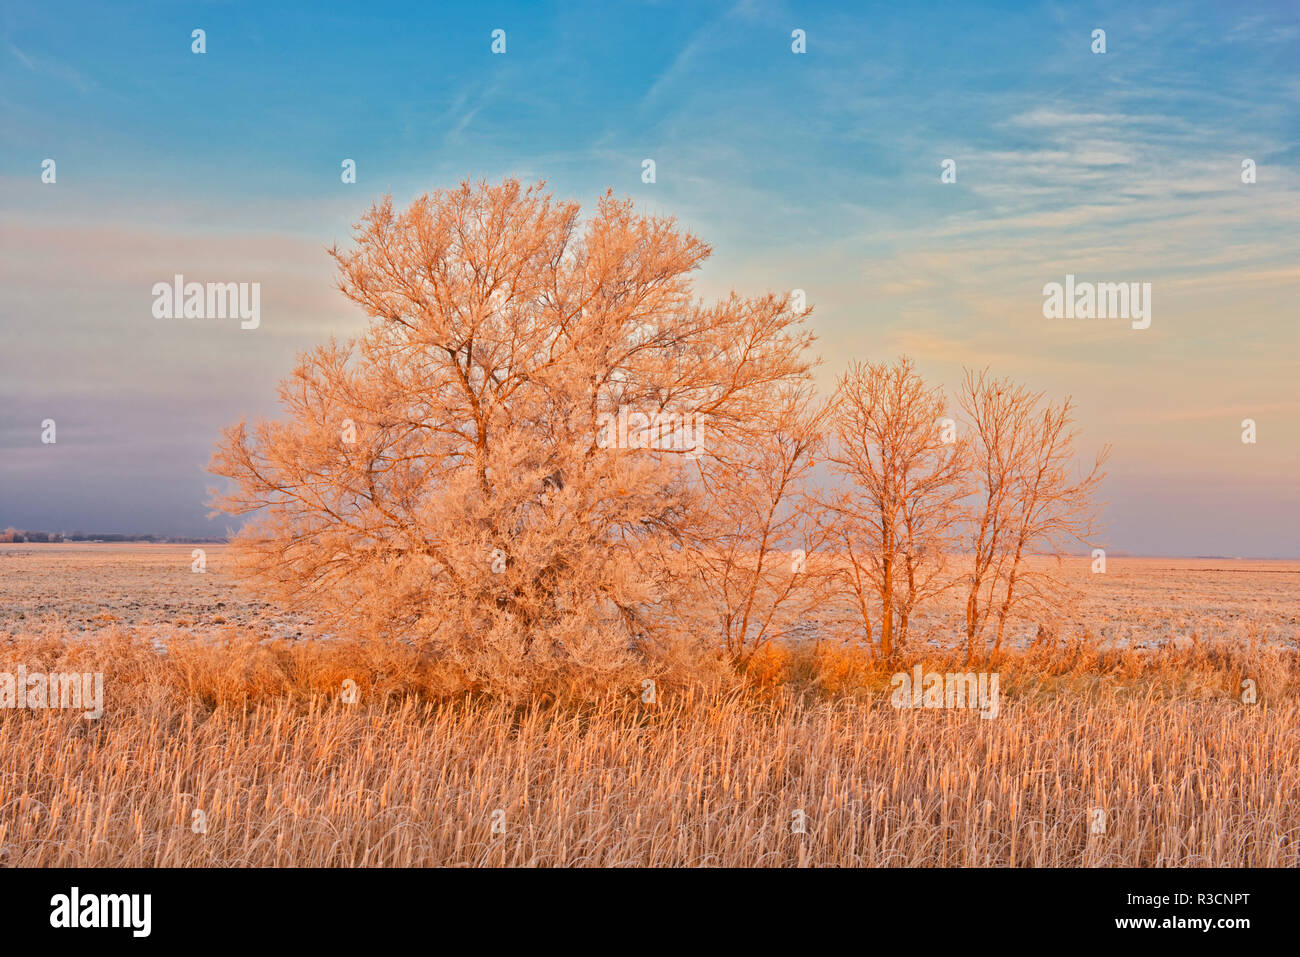 Canada, Manitoba, Lorette. Trees and grassy field in winter. Stock Photo